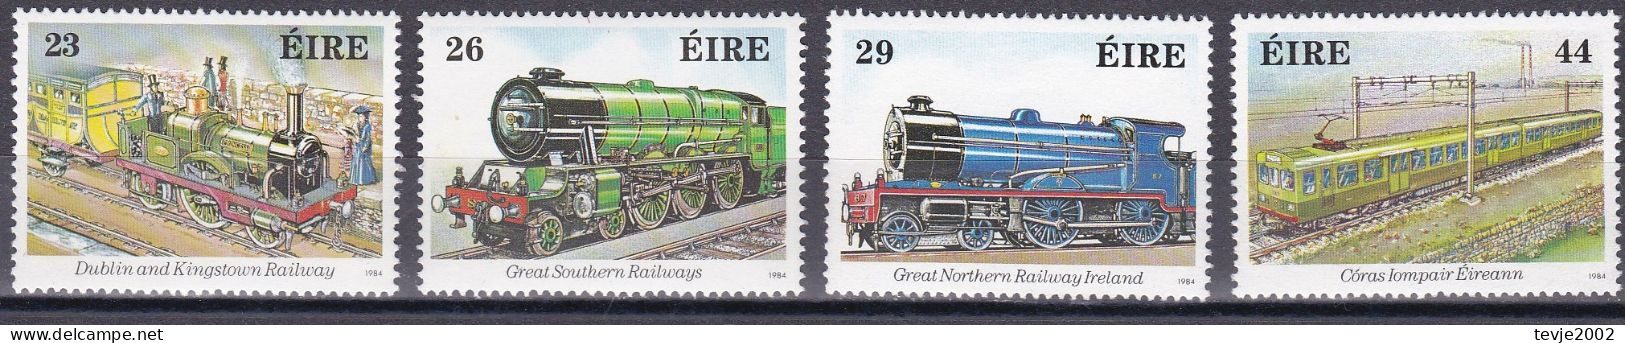 Irland Eire 1984 - Mi.Nr. 528 - 531 - Postfrisch MNH - Eisenbahnen Railways - Treinen